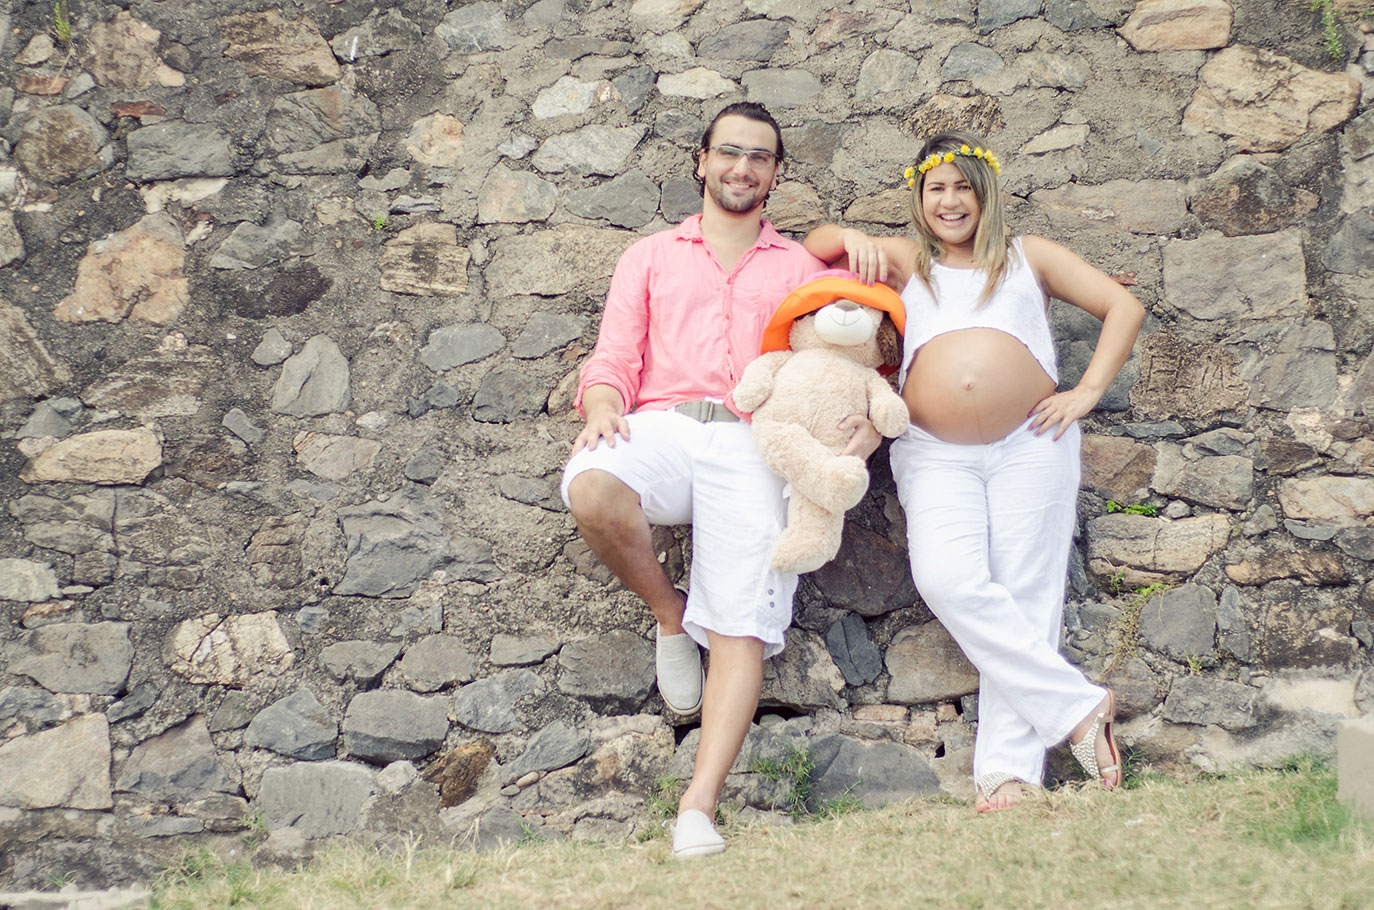 Fotografia de gestantes, grávidas - Salvador - Bahia - Mateus Lima 